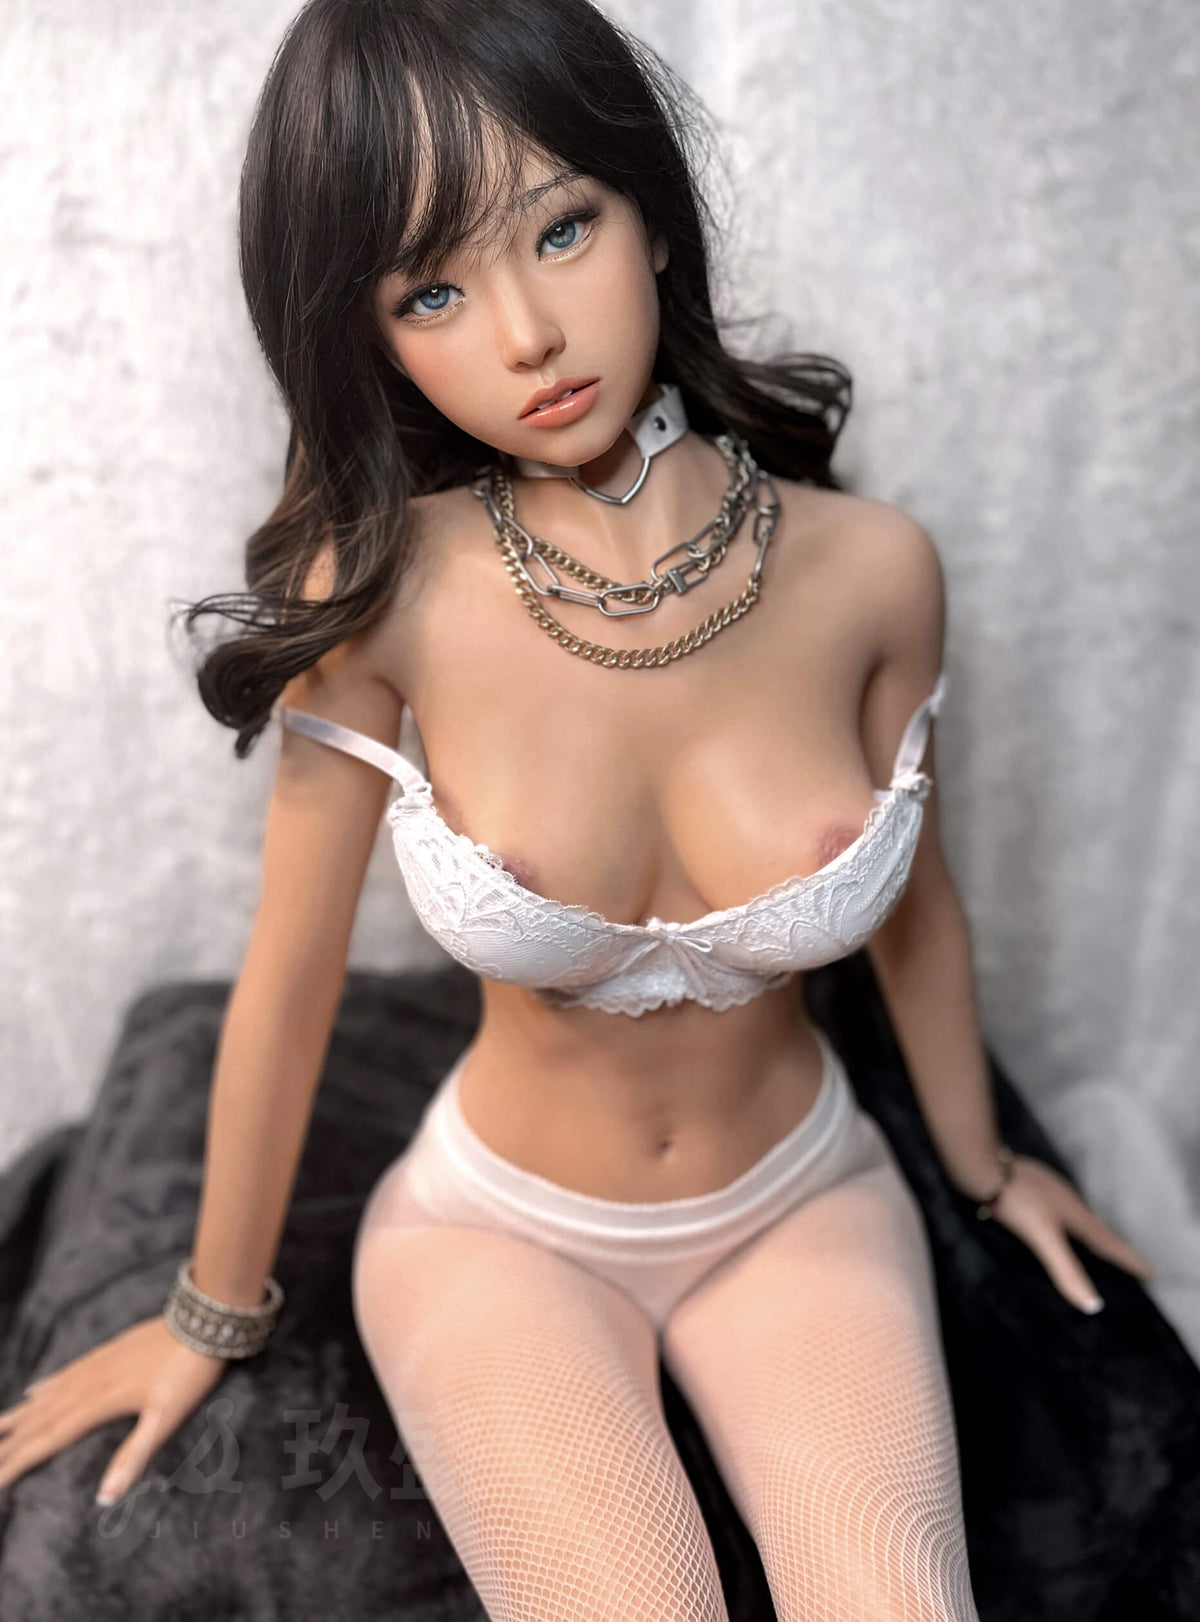 Zuni: Small Teen Sex Doll